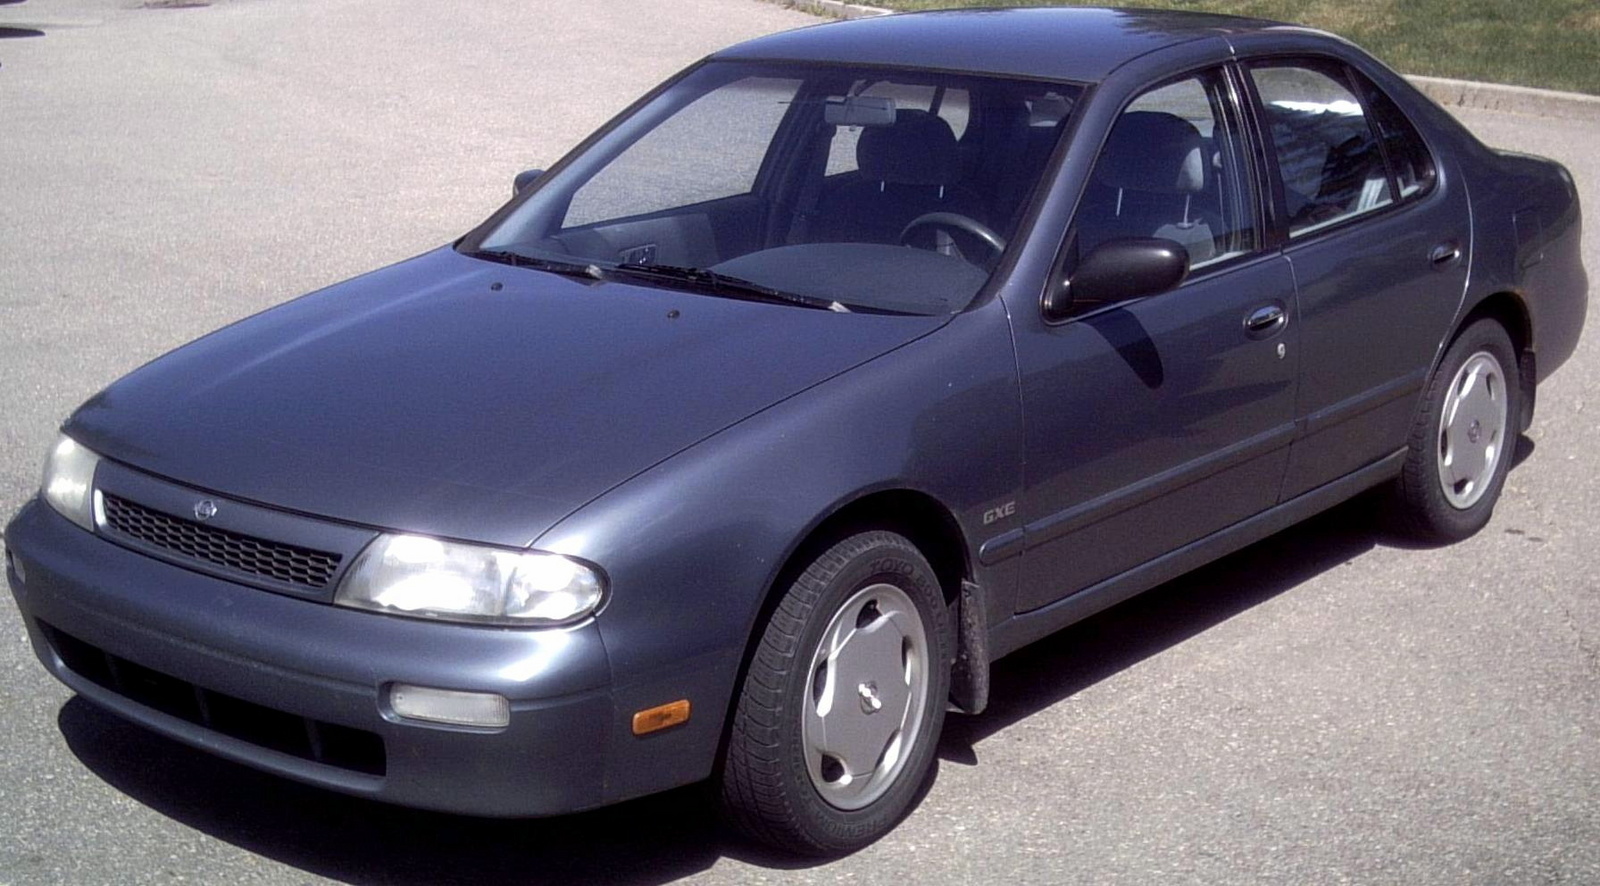 1994 Nissan altima sedan review #2